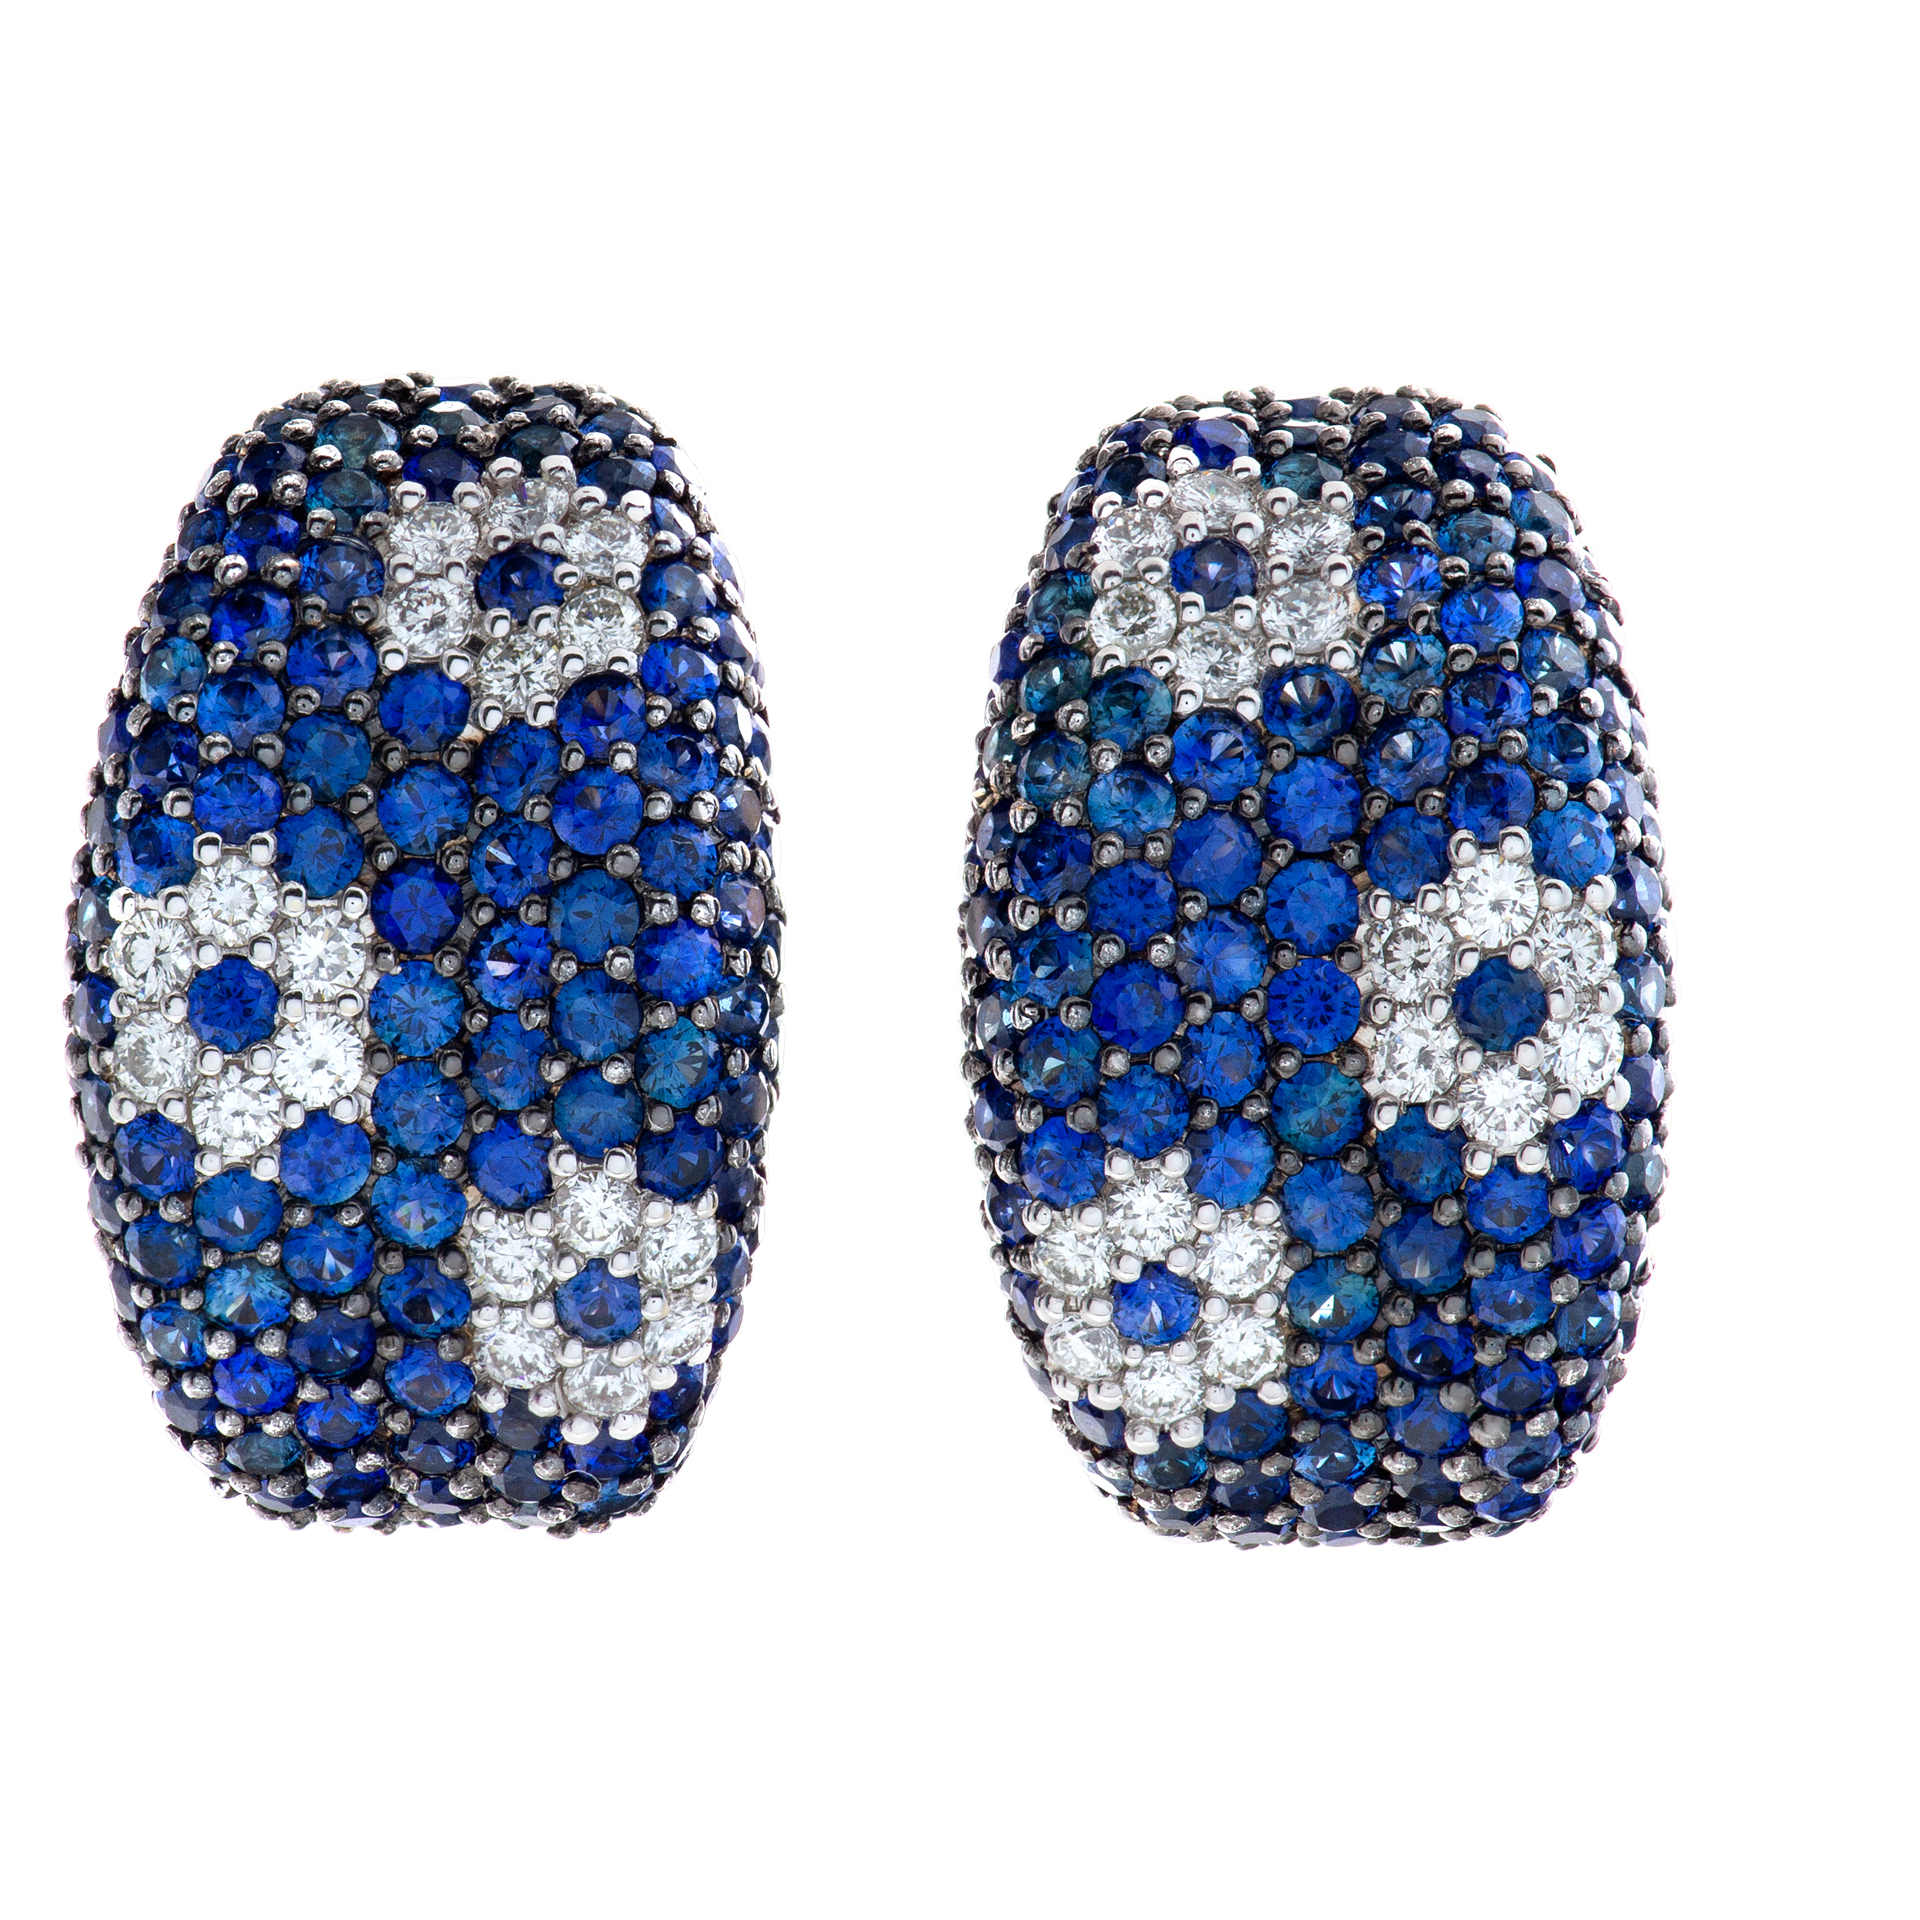 Roberto Coin blue sapphire & diamond earrings in 18k white gold